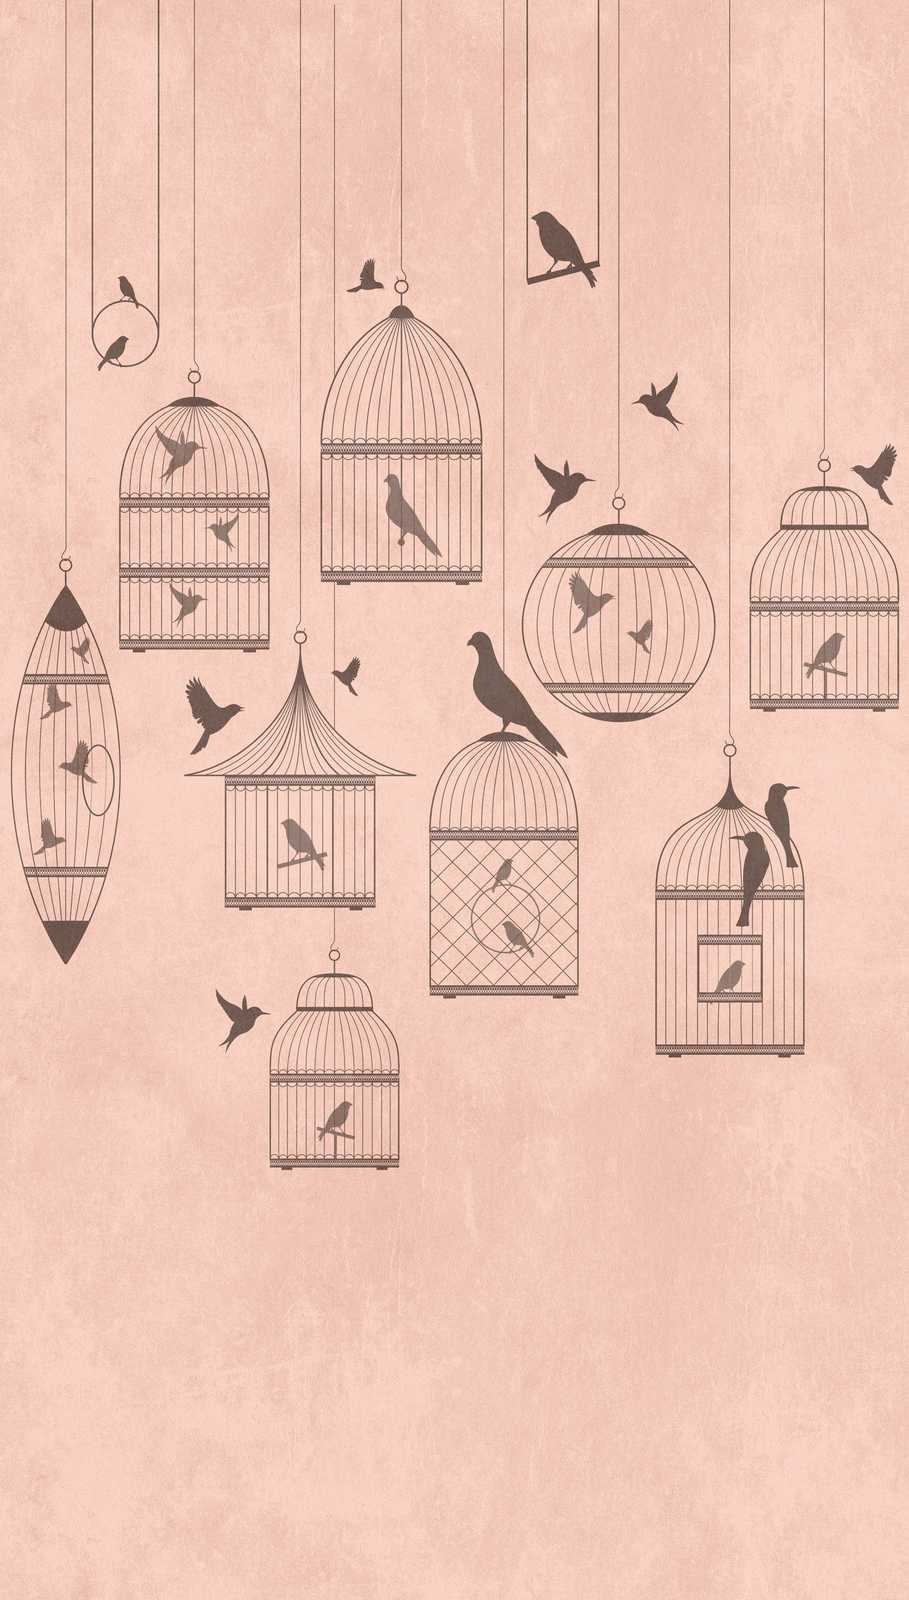             Carta da parati novità - Carta da parati con motivo rosa, uccello canterino e voliera vintage
        